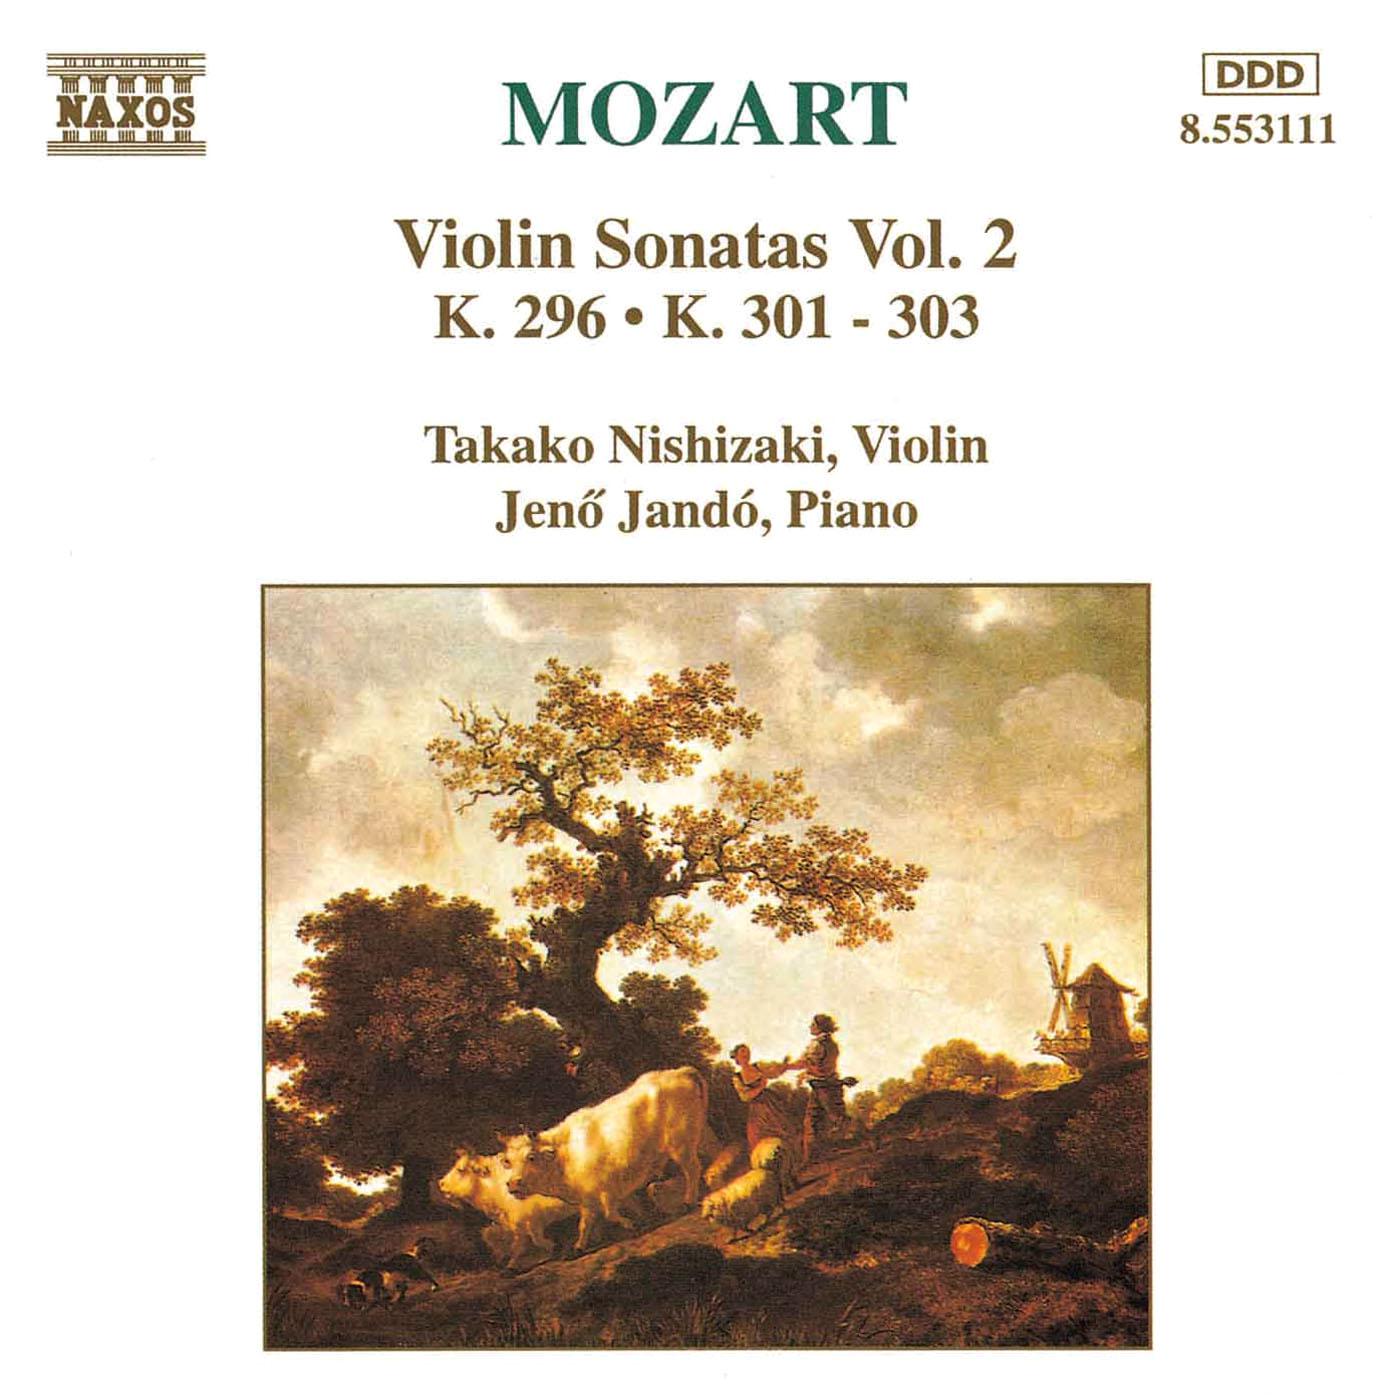 MOZART: Violin Sonatas, Vol. 2专辑